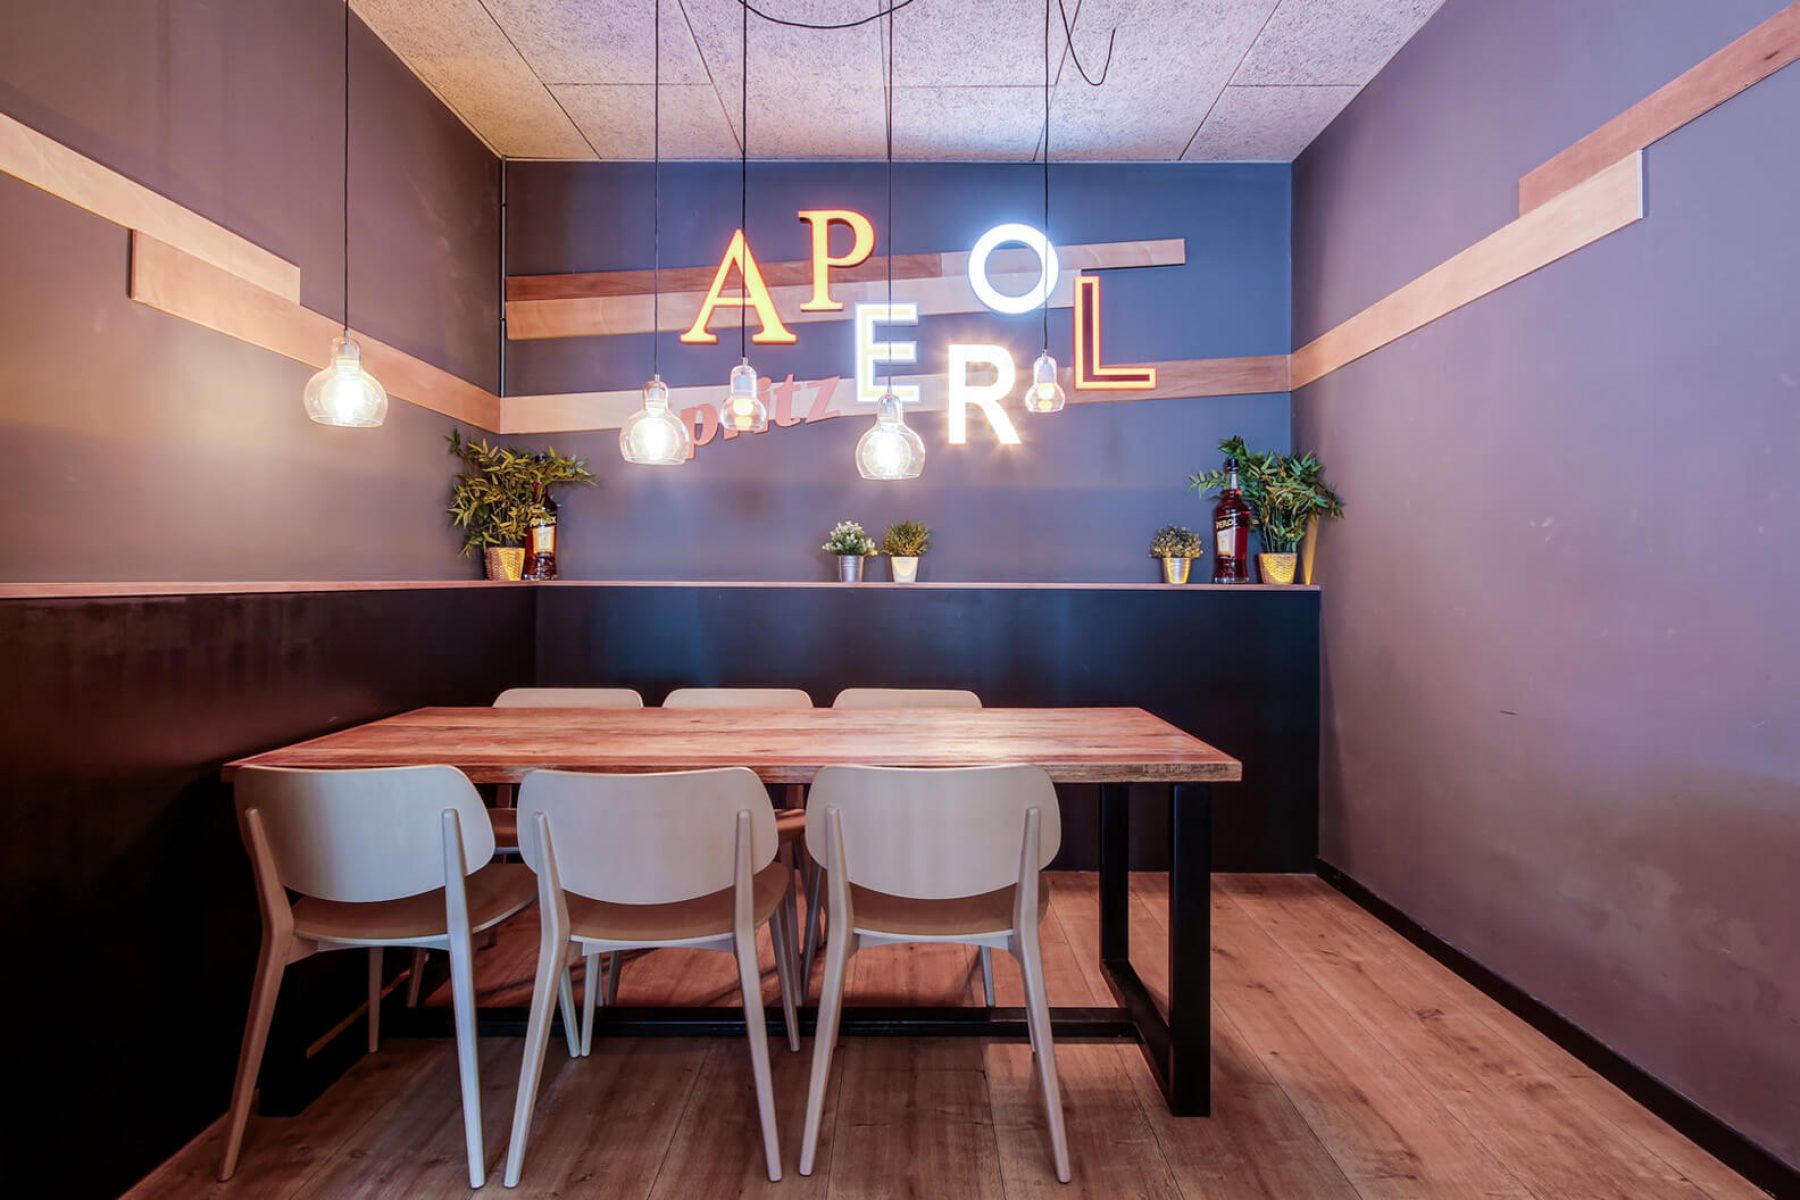 Aperol Spritz Bar - INDAStudio - Interiorismo Barcelona